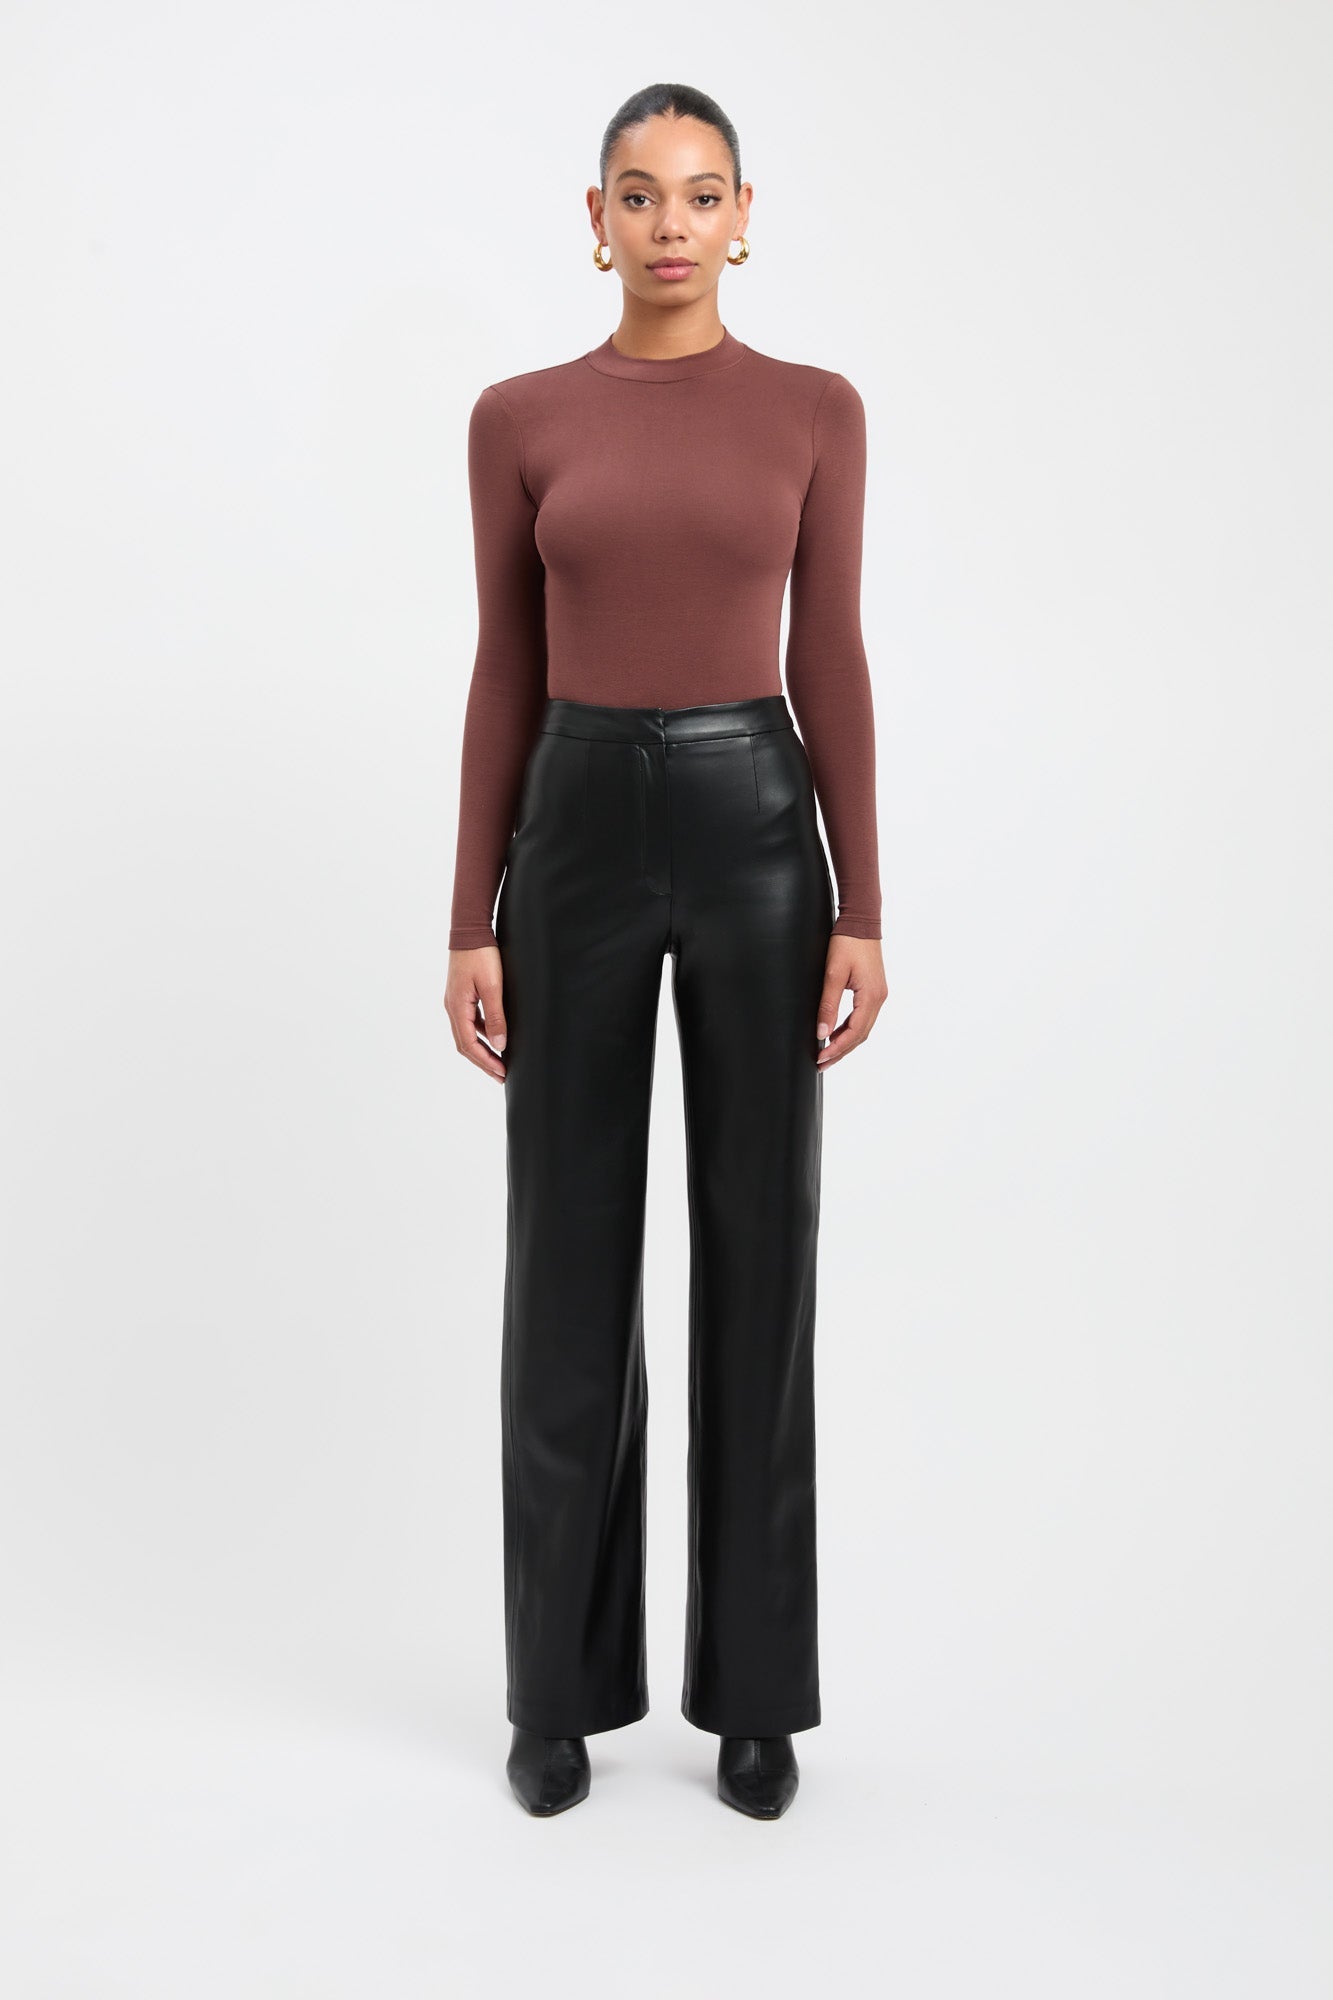 Zara contour body suit - Gem